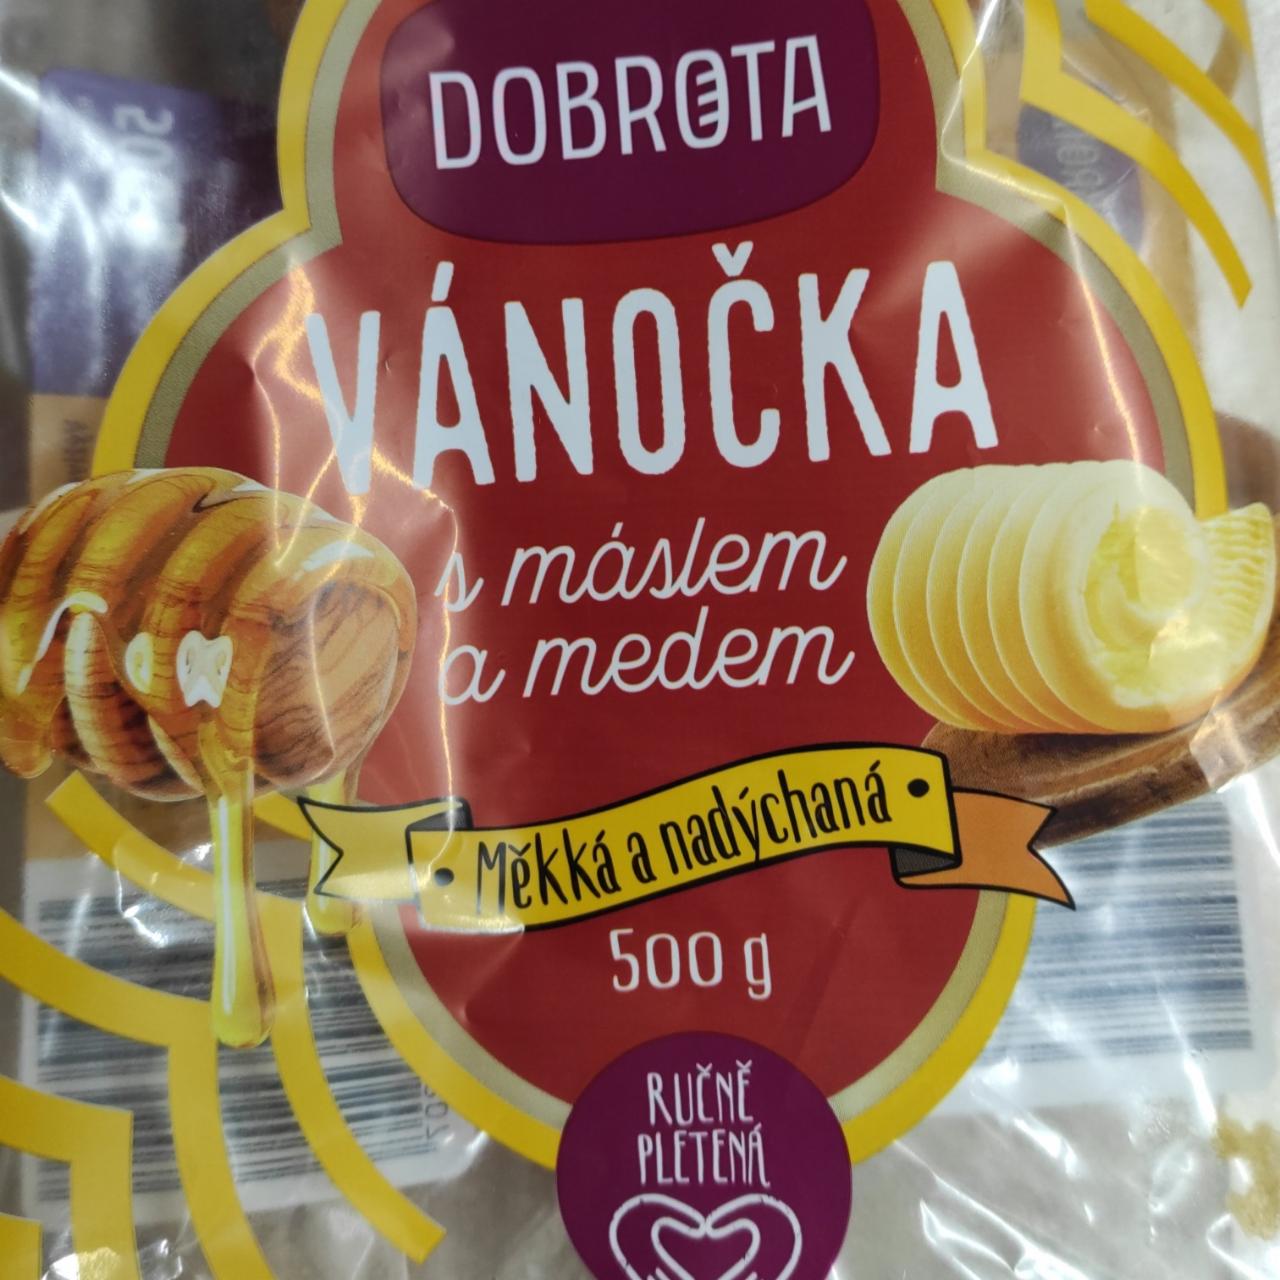 Fotografie - Vánočka s máslem a medem Dobrota